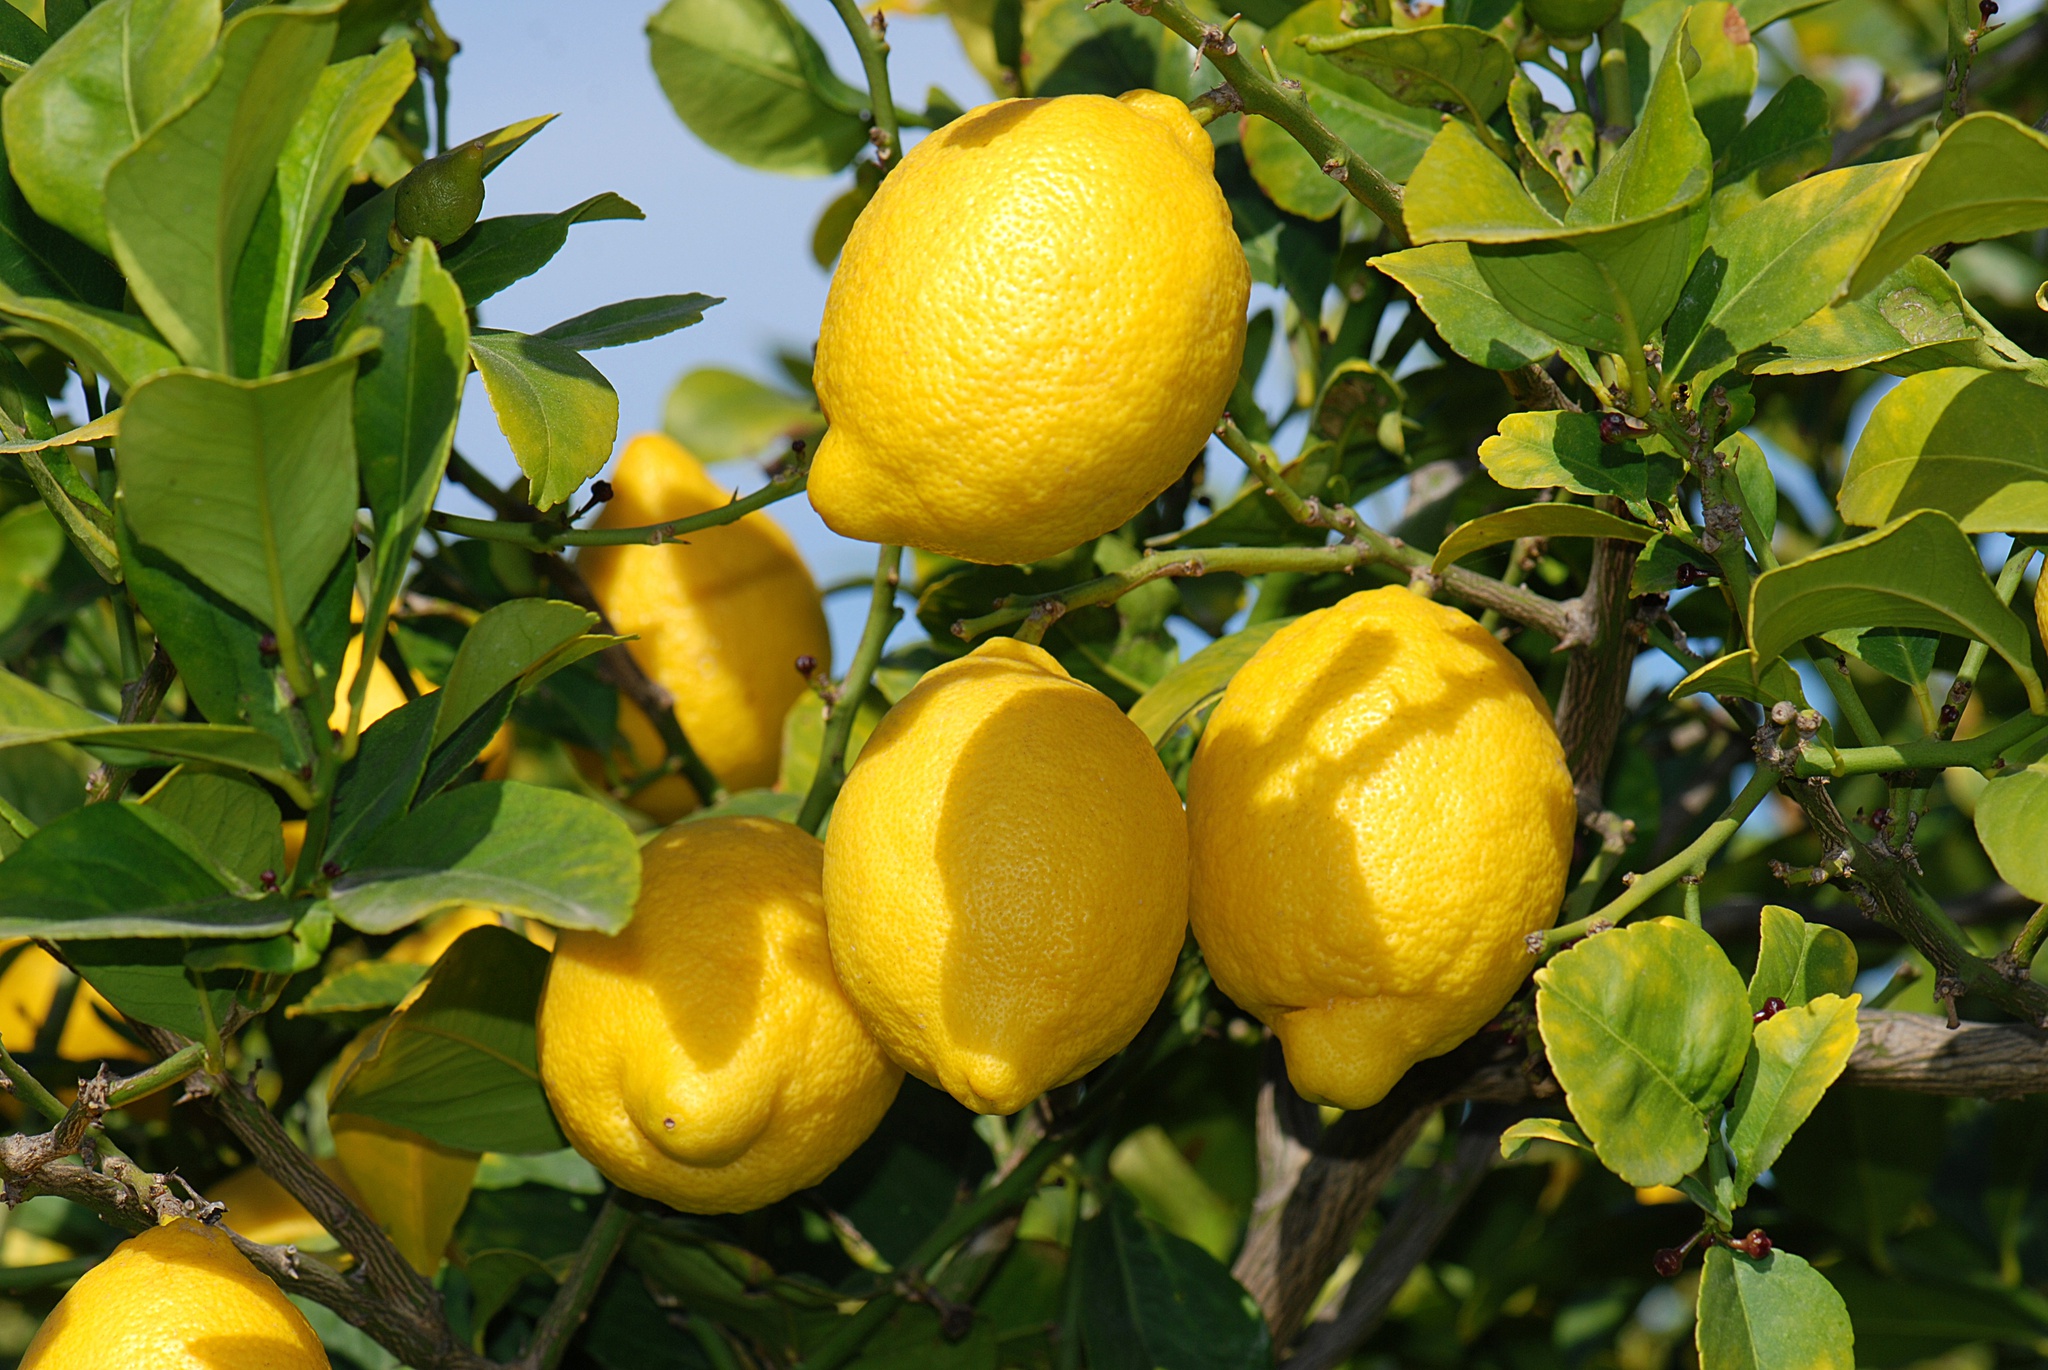 La sobreproducción en España deja 400 millones de kilos de limones en los árboles |  Agricultura